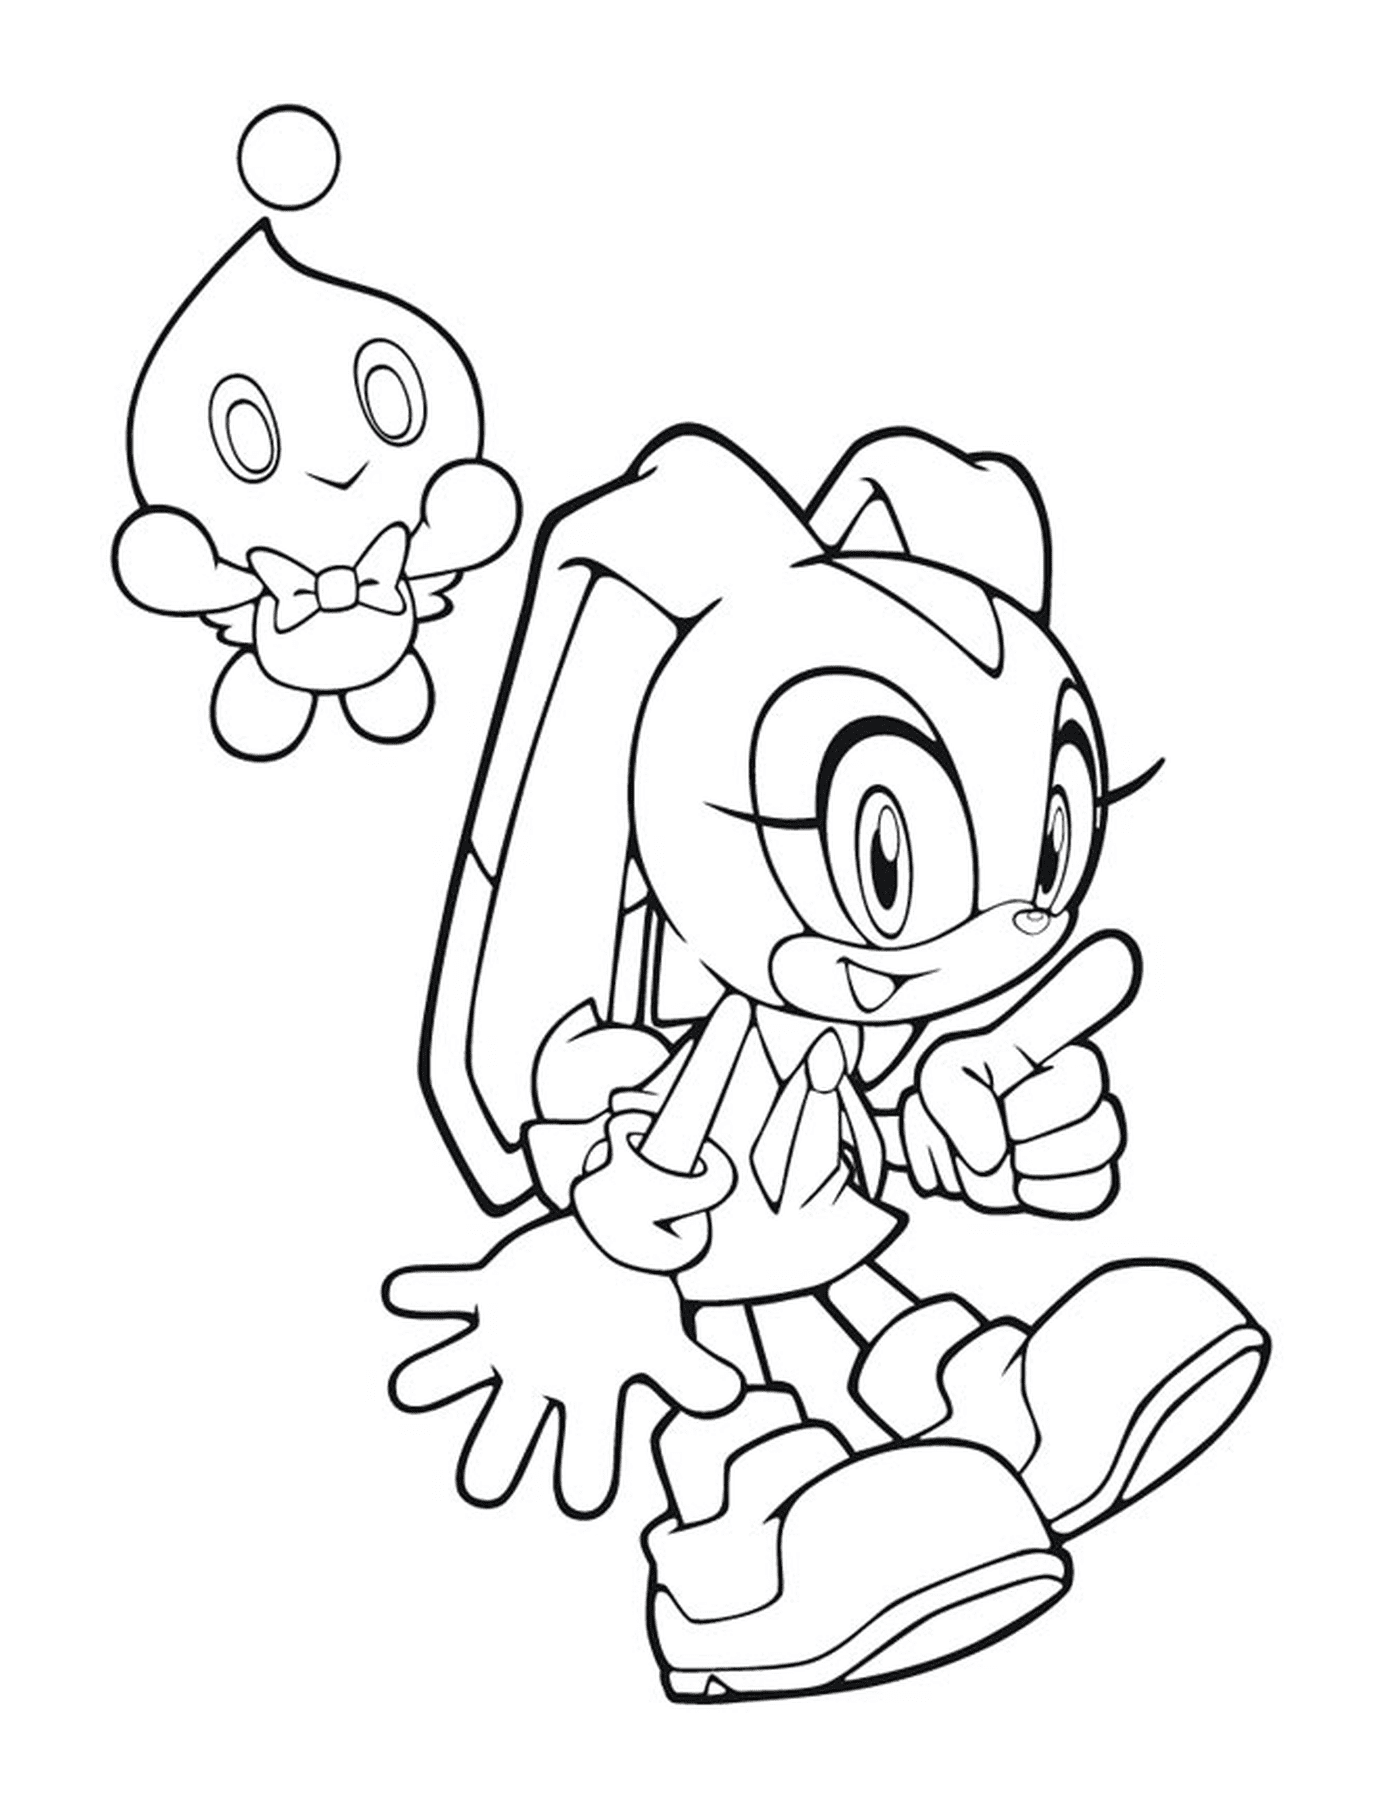  Ein Charakter von Sonic der Hedgehog 